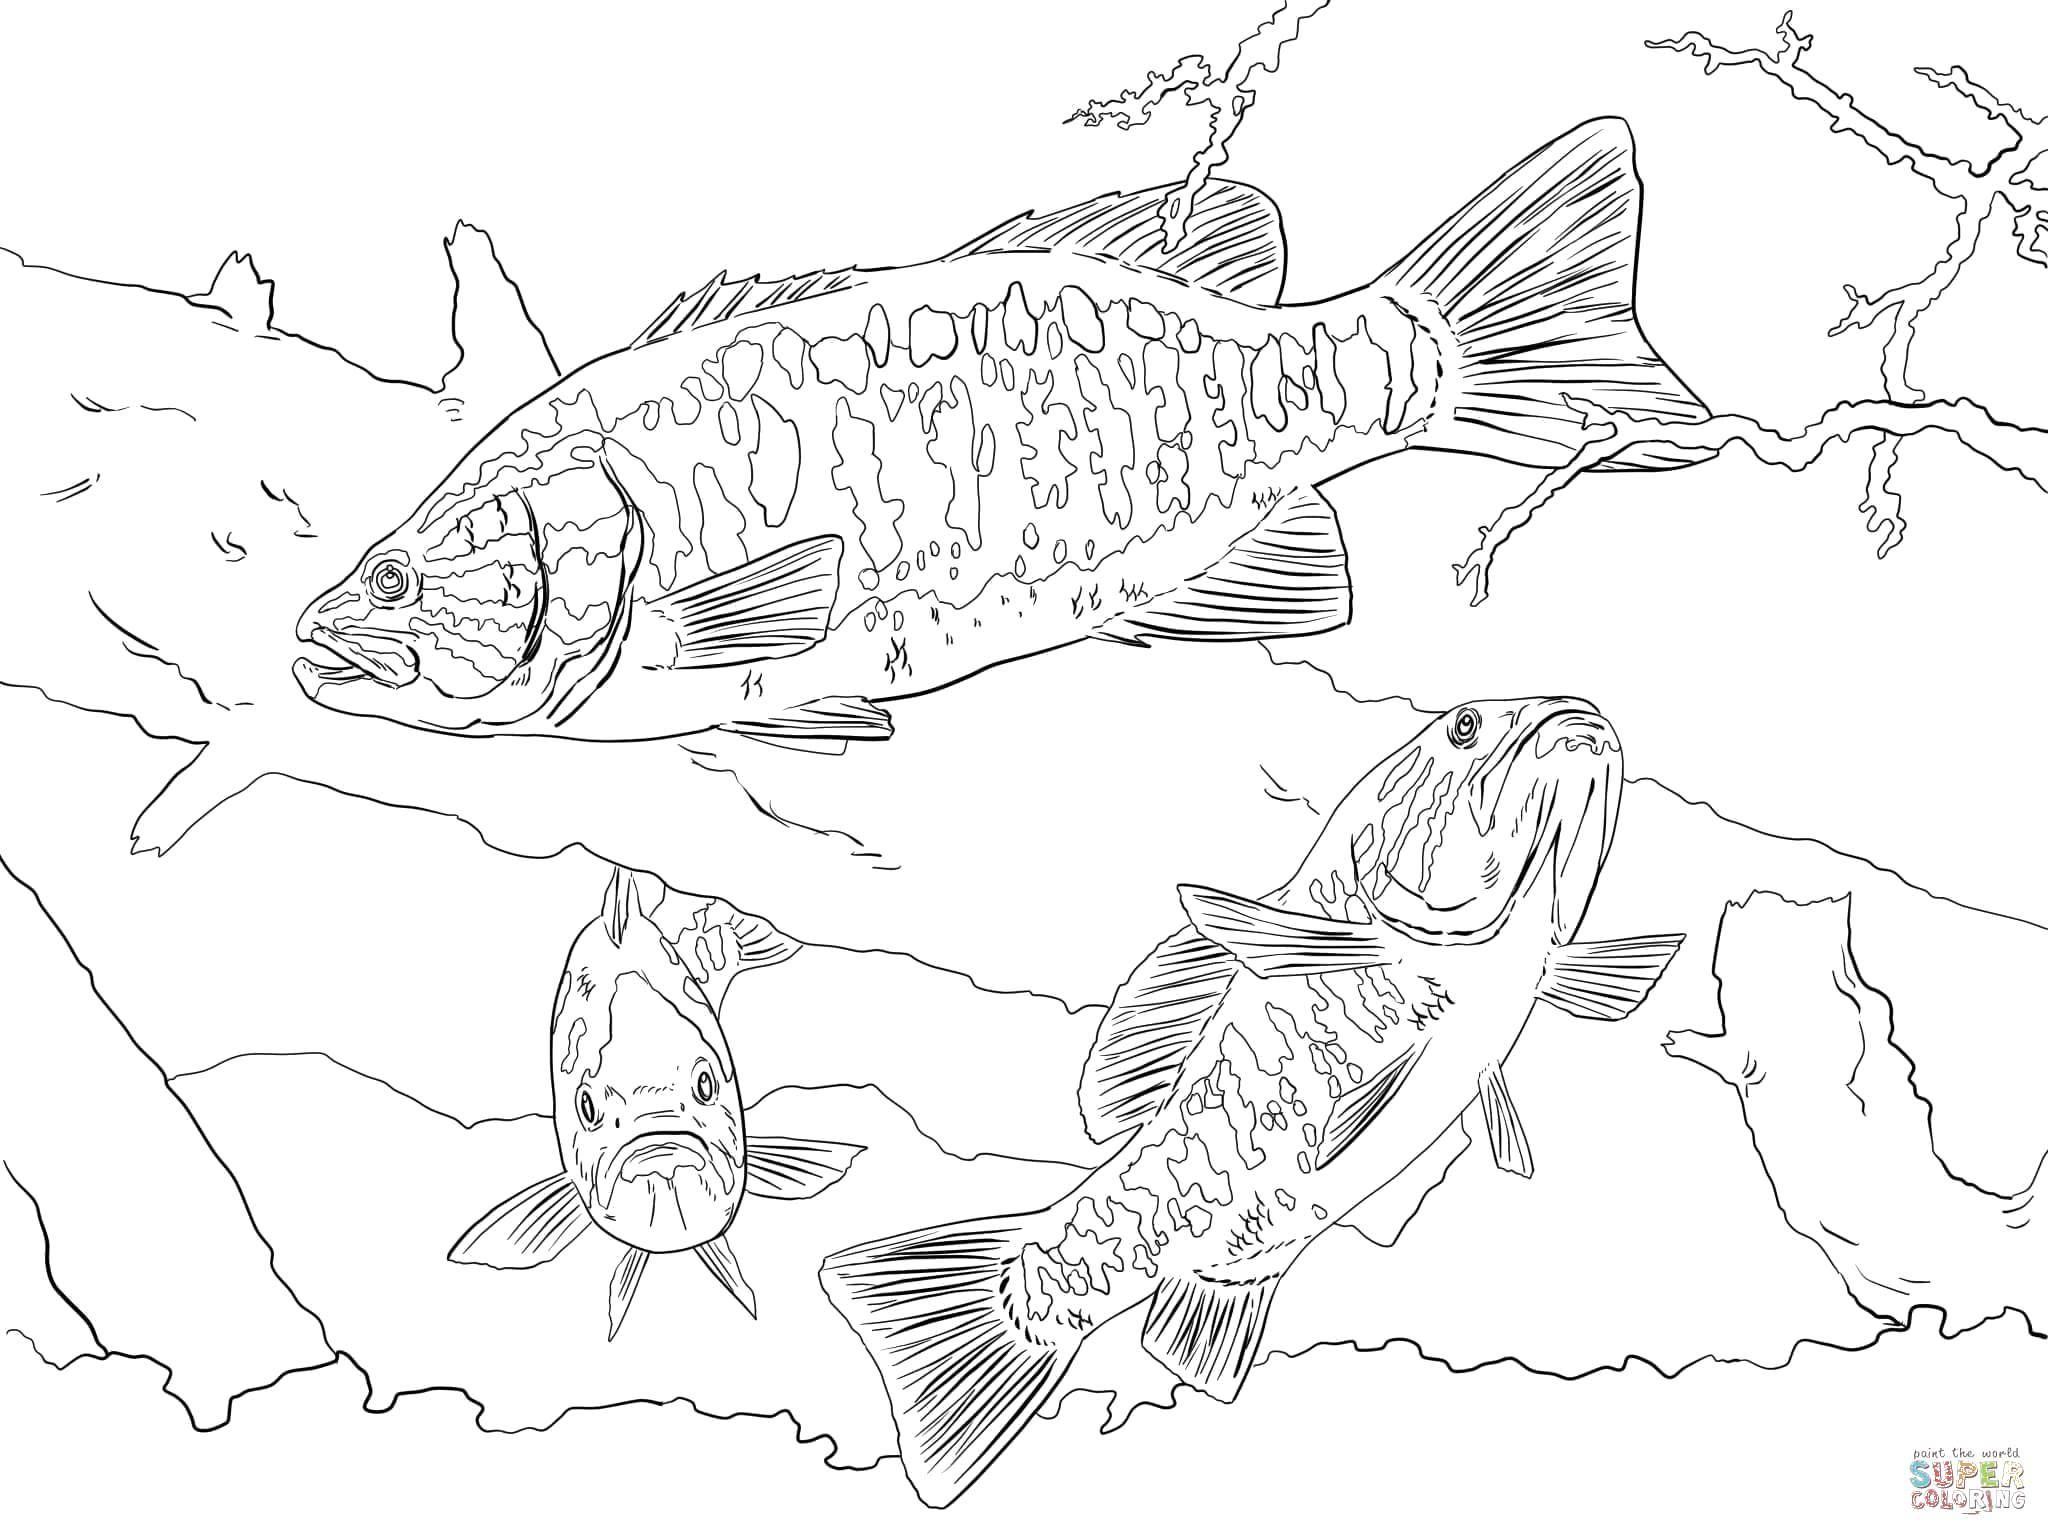 Coloring Fish at the bottom. Category fish. Tags:  fish, fish.